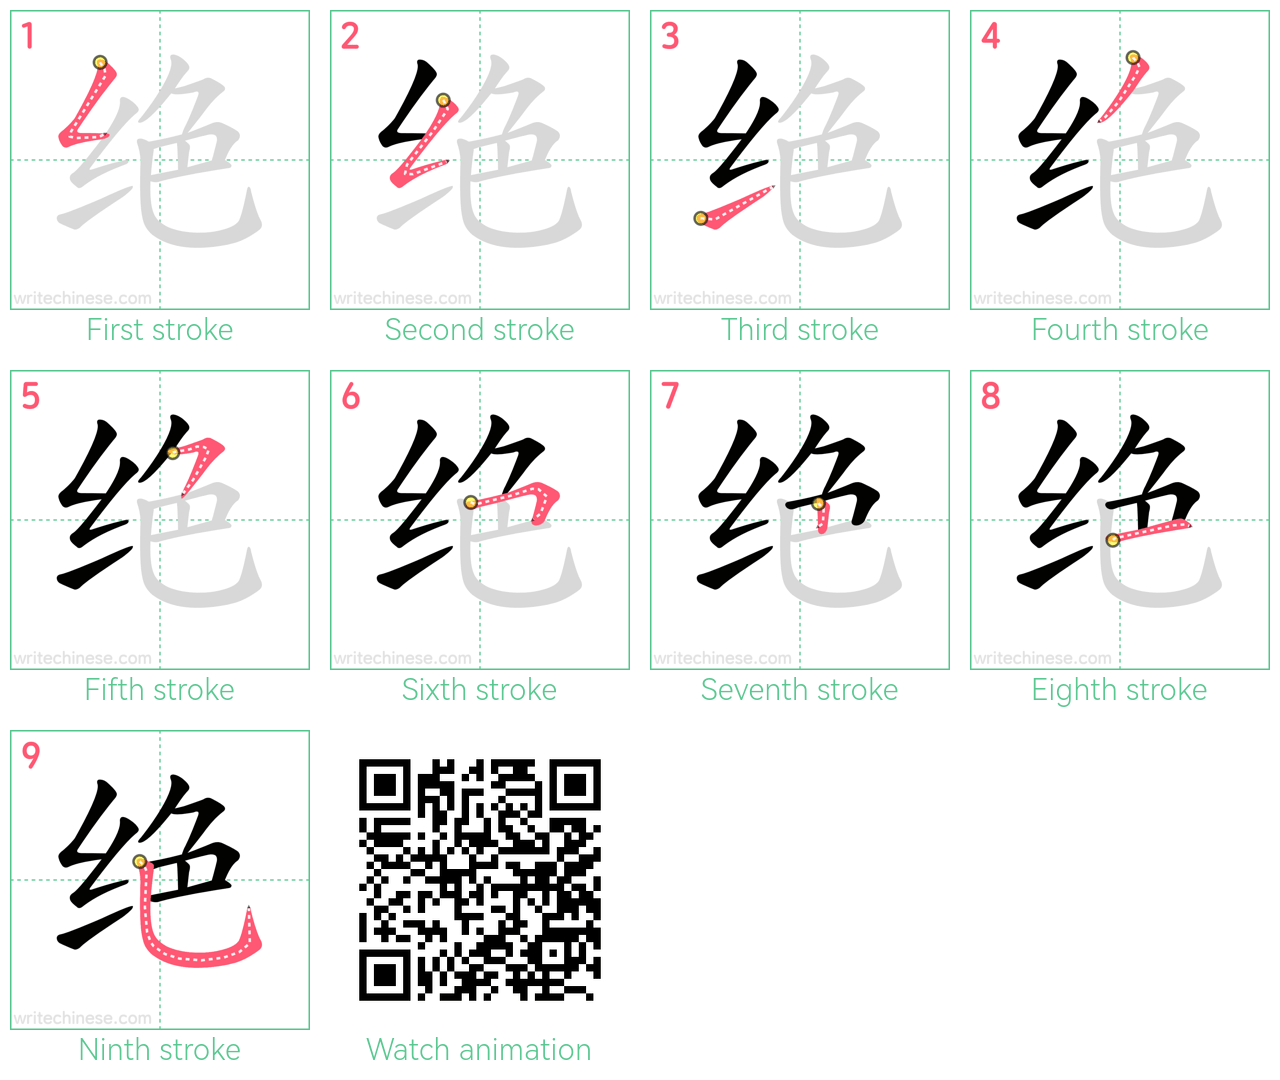 绝 step-by-step stroke order diagrams